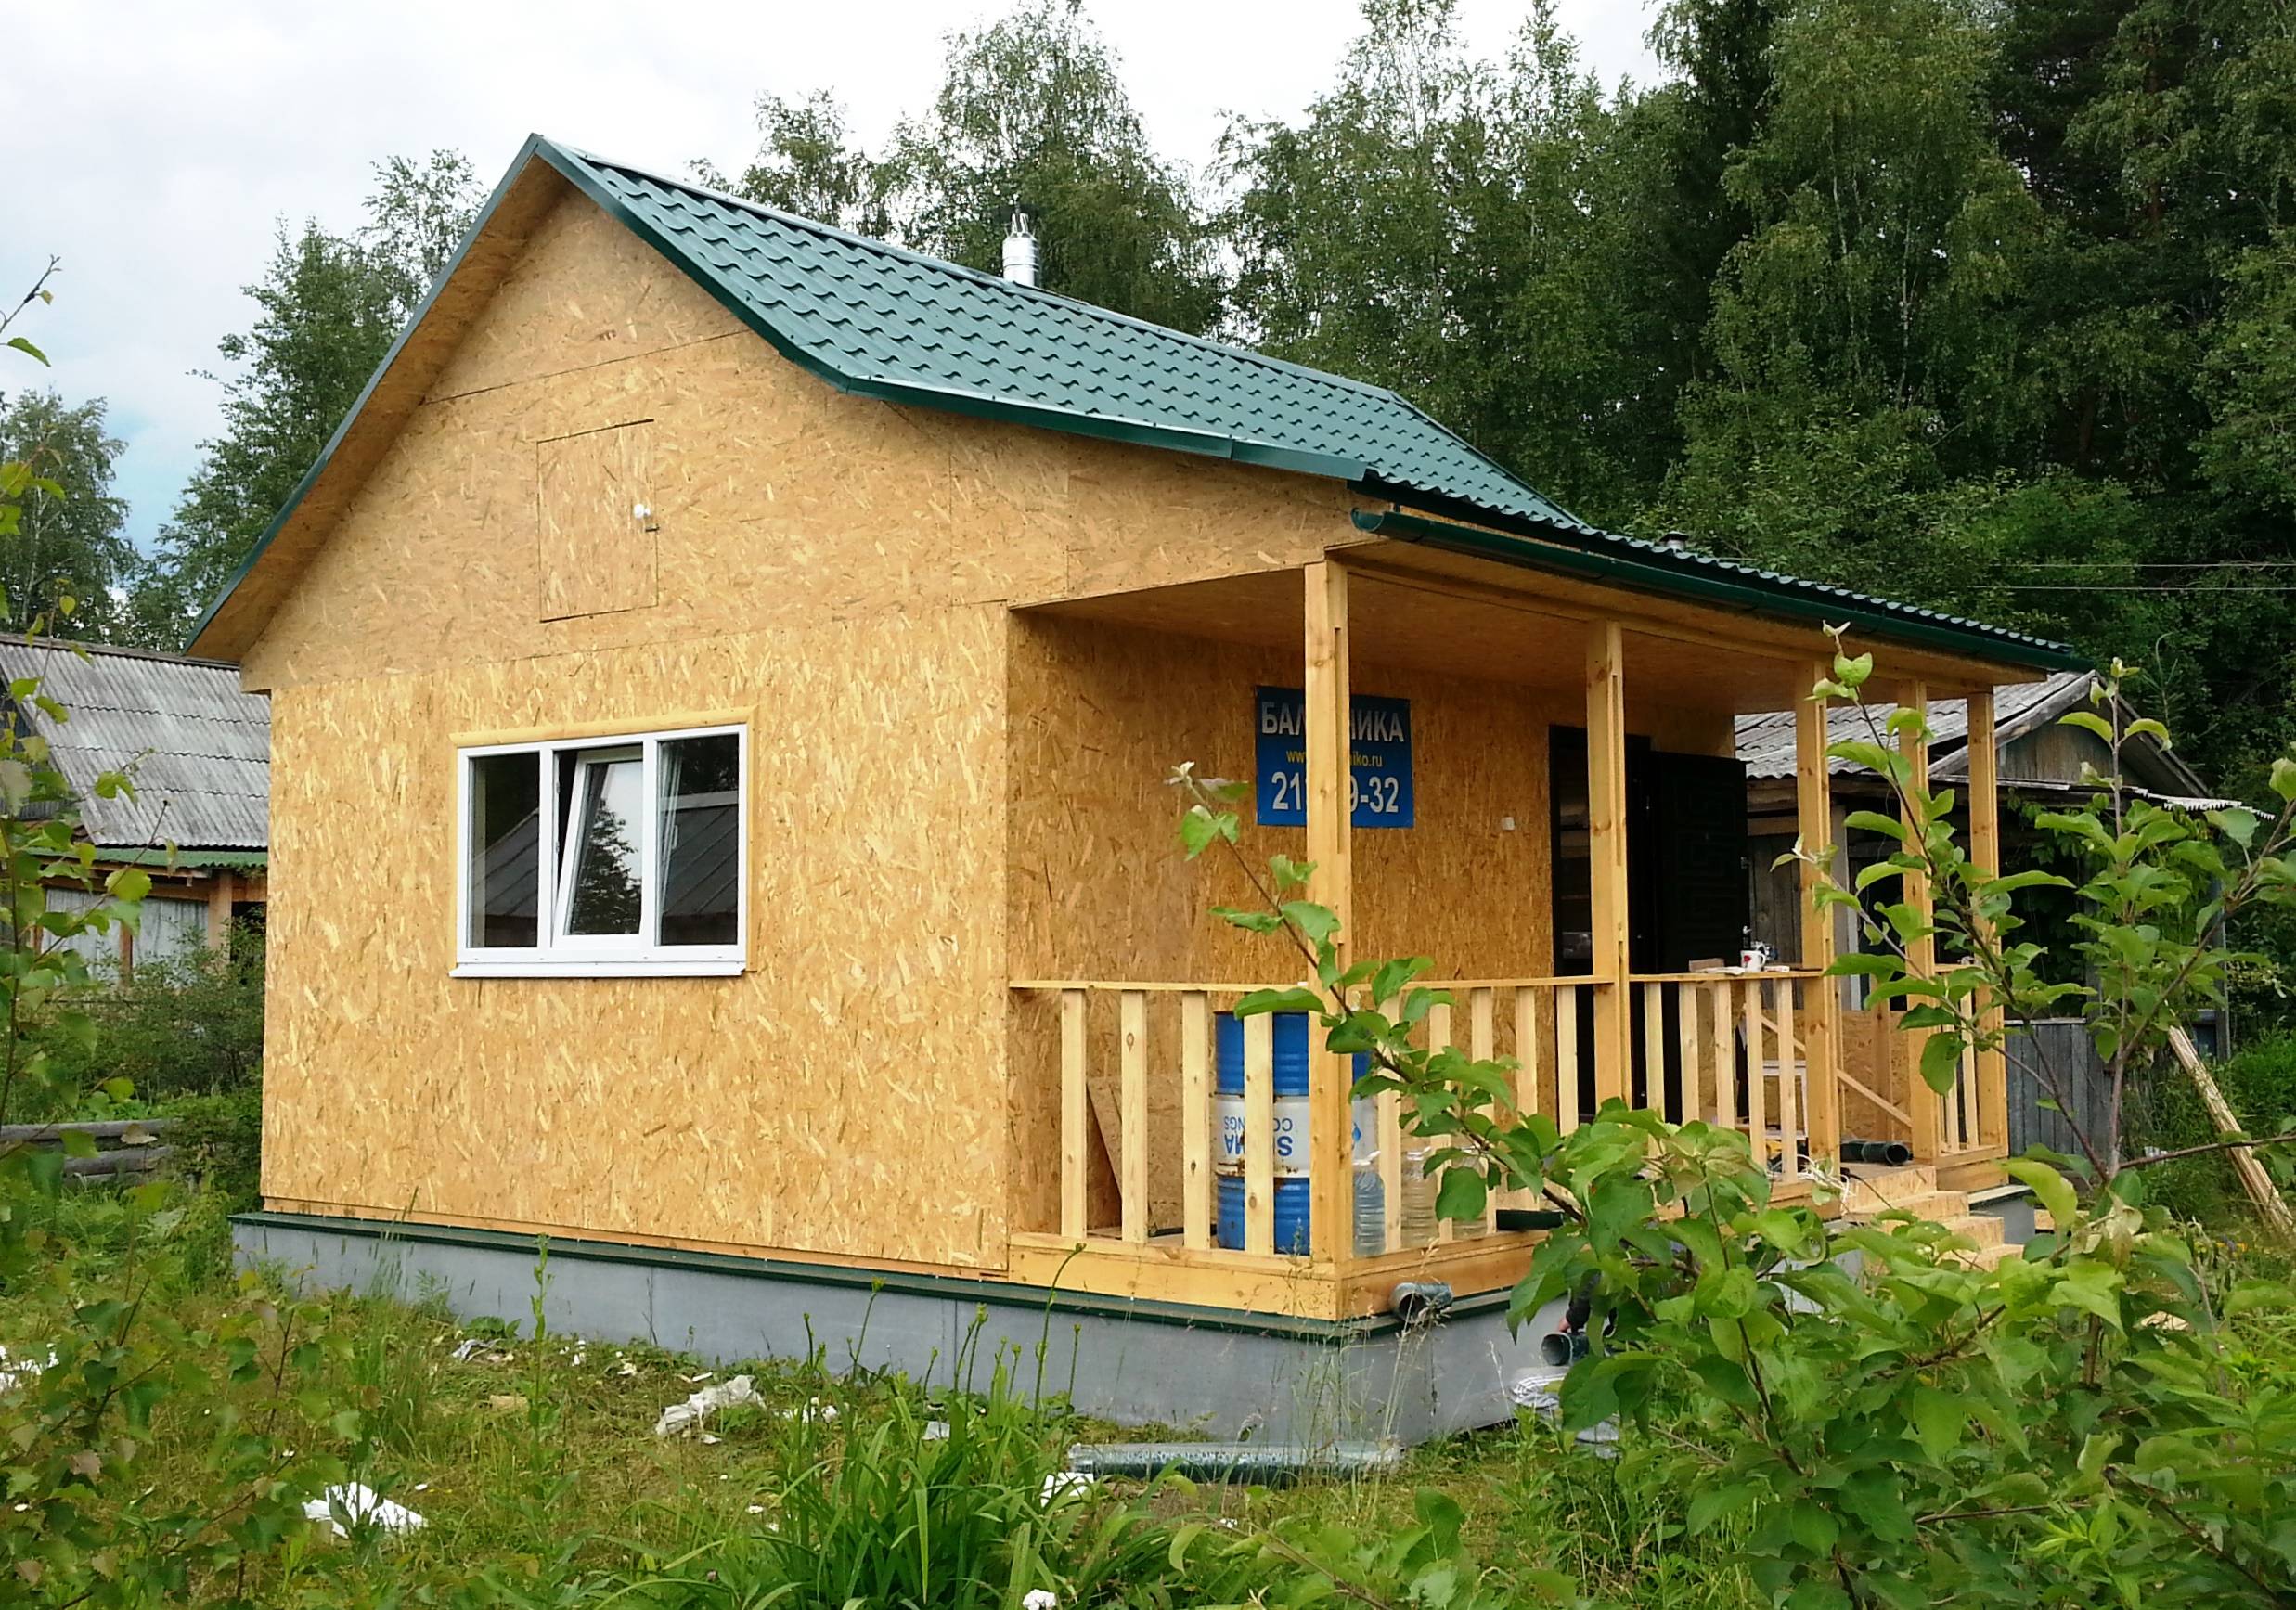 Как дешево построить дом: выбор материалов, пошаговое руководство самостоятельного строительства